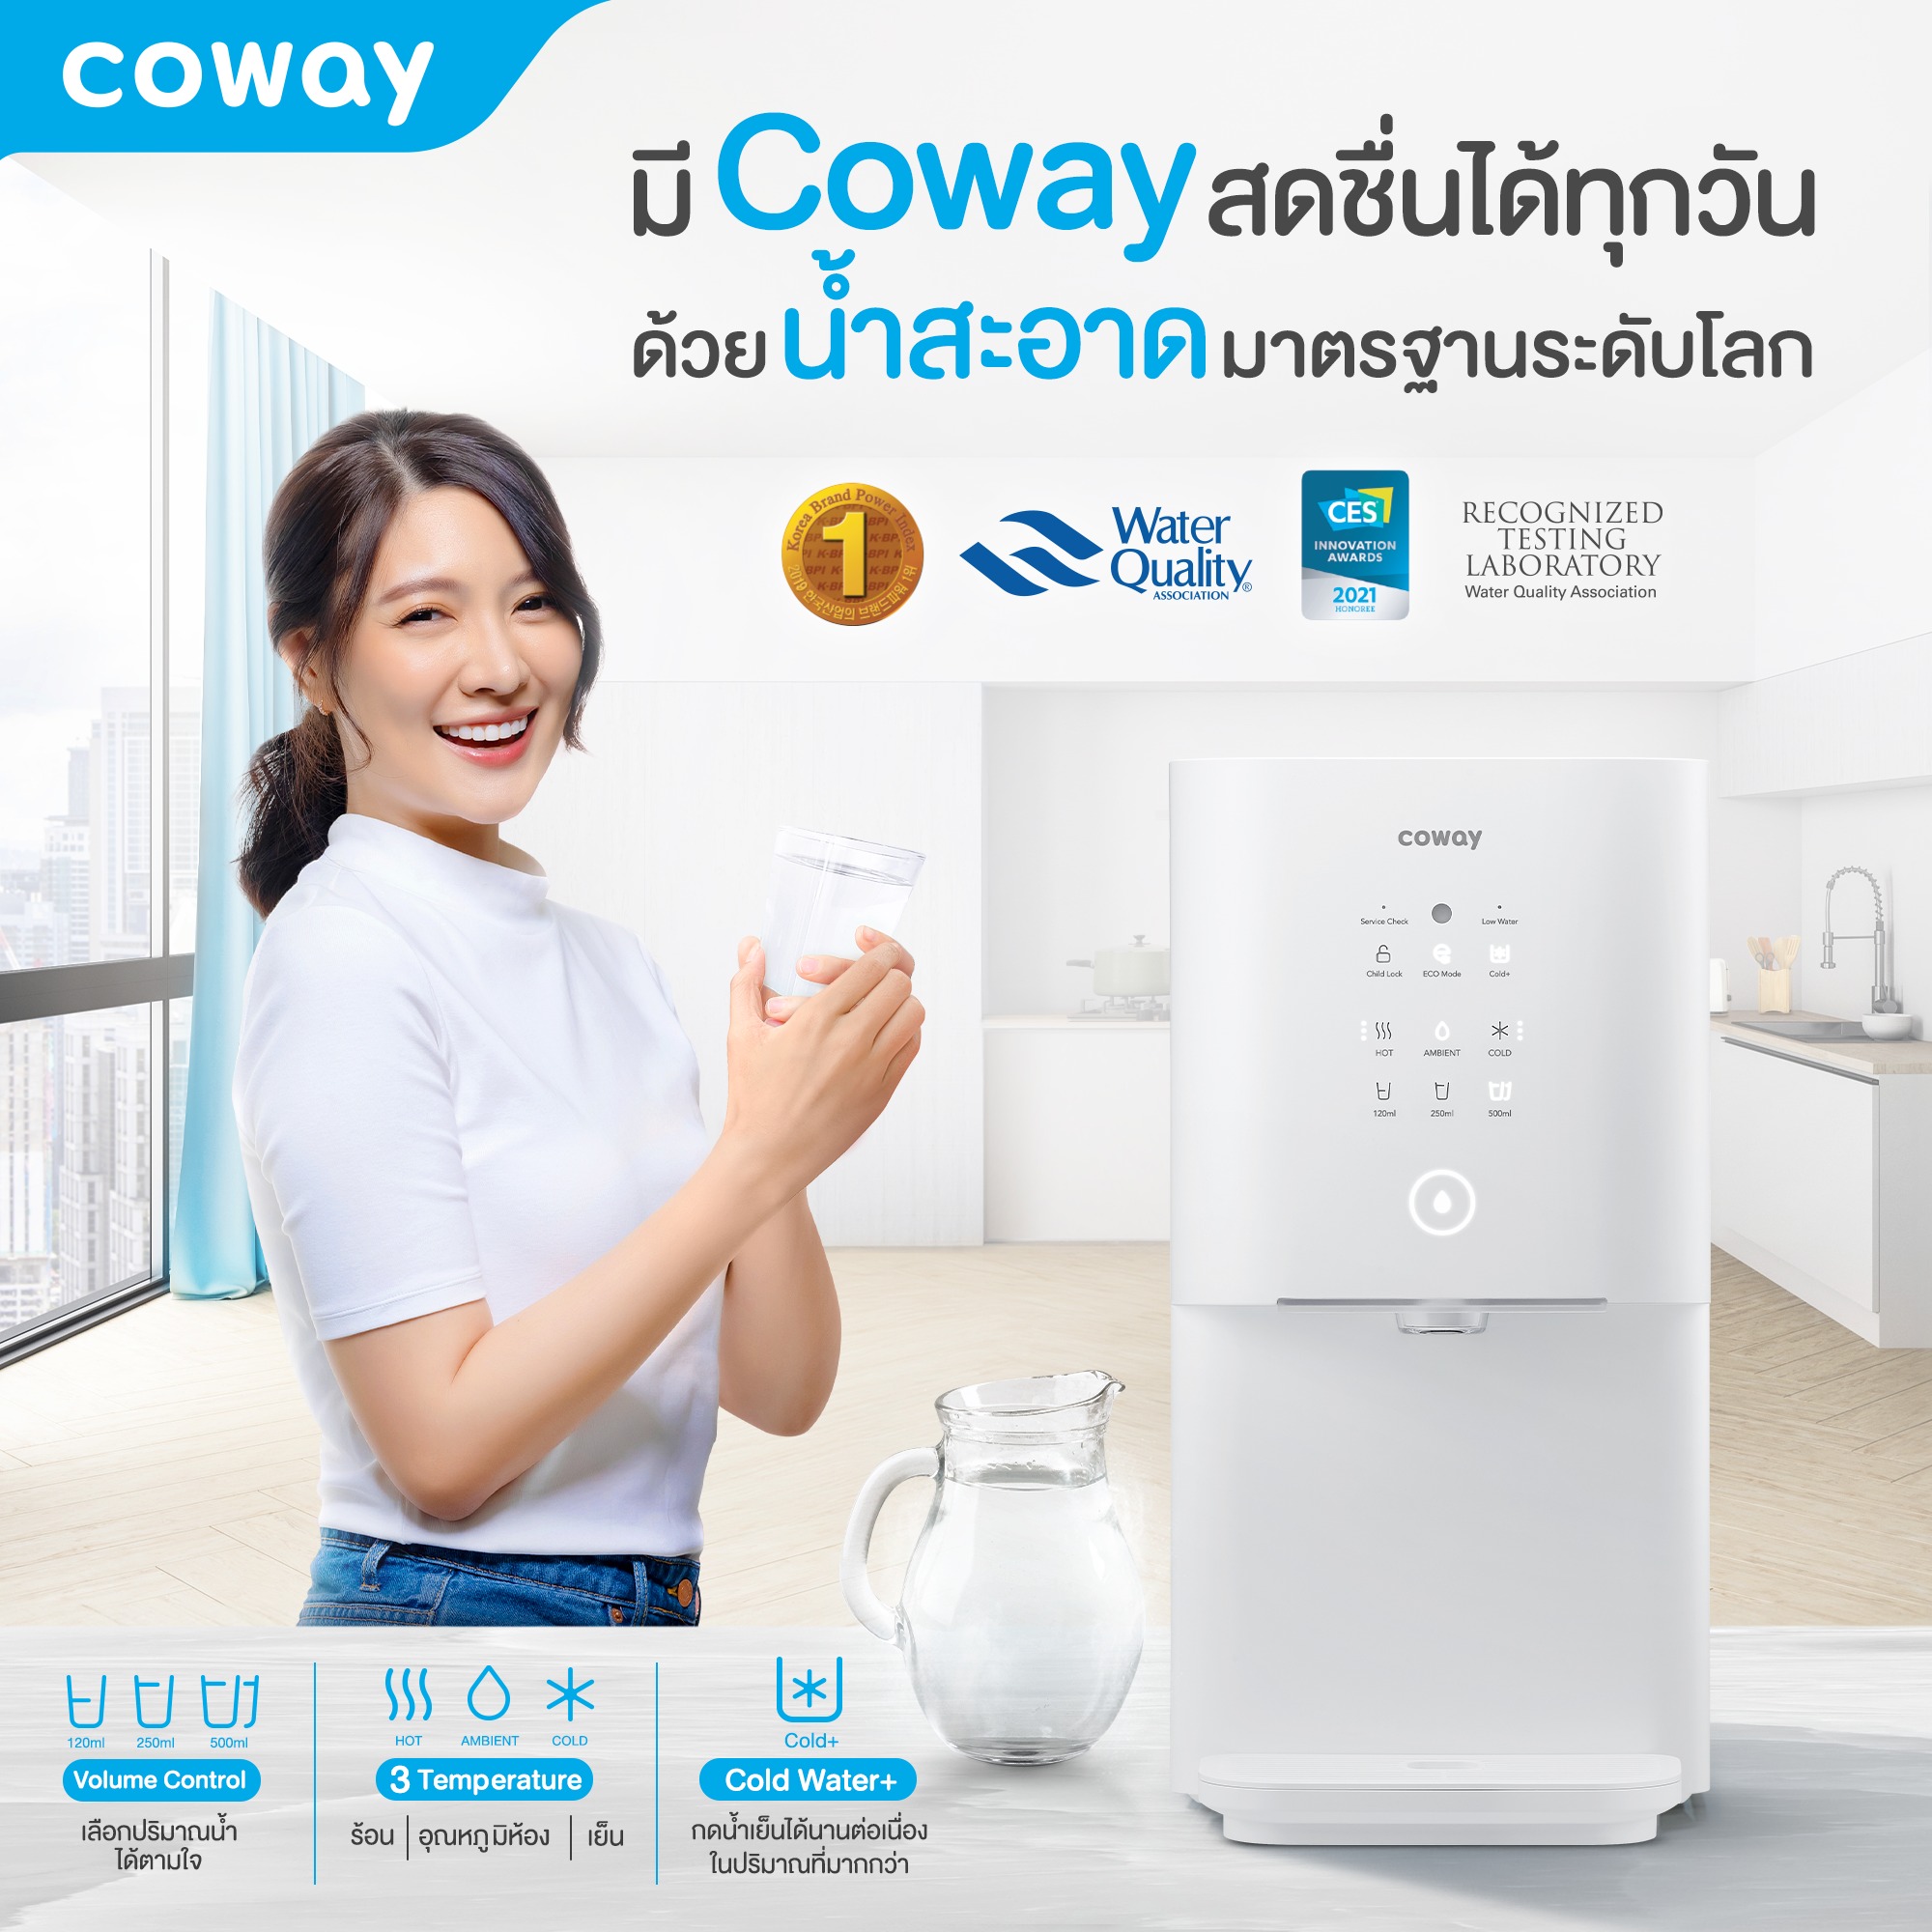 Coway Thailand